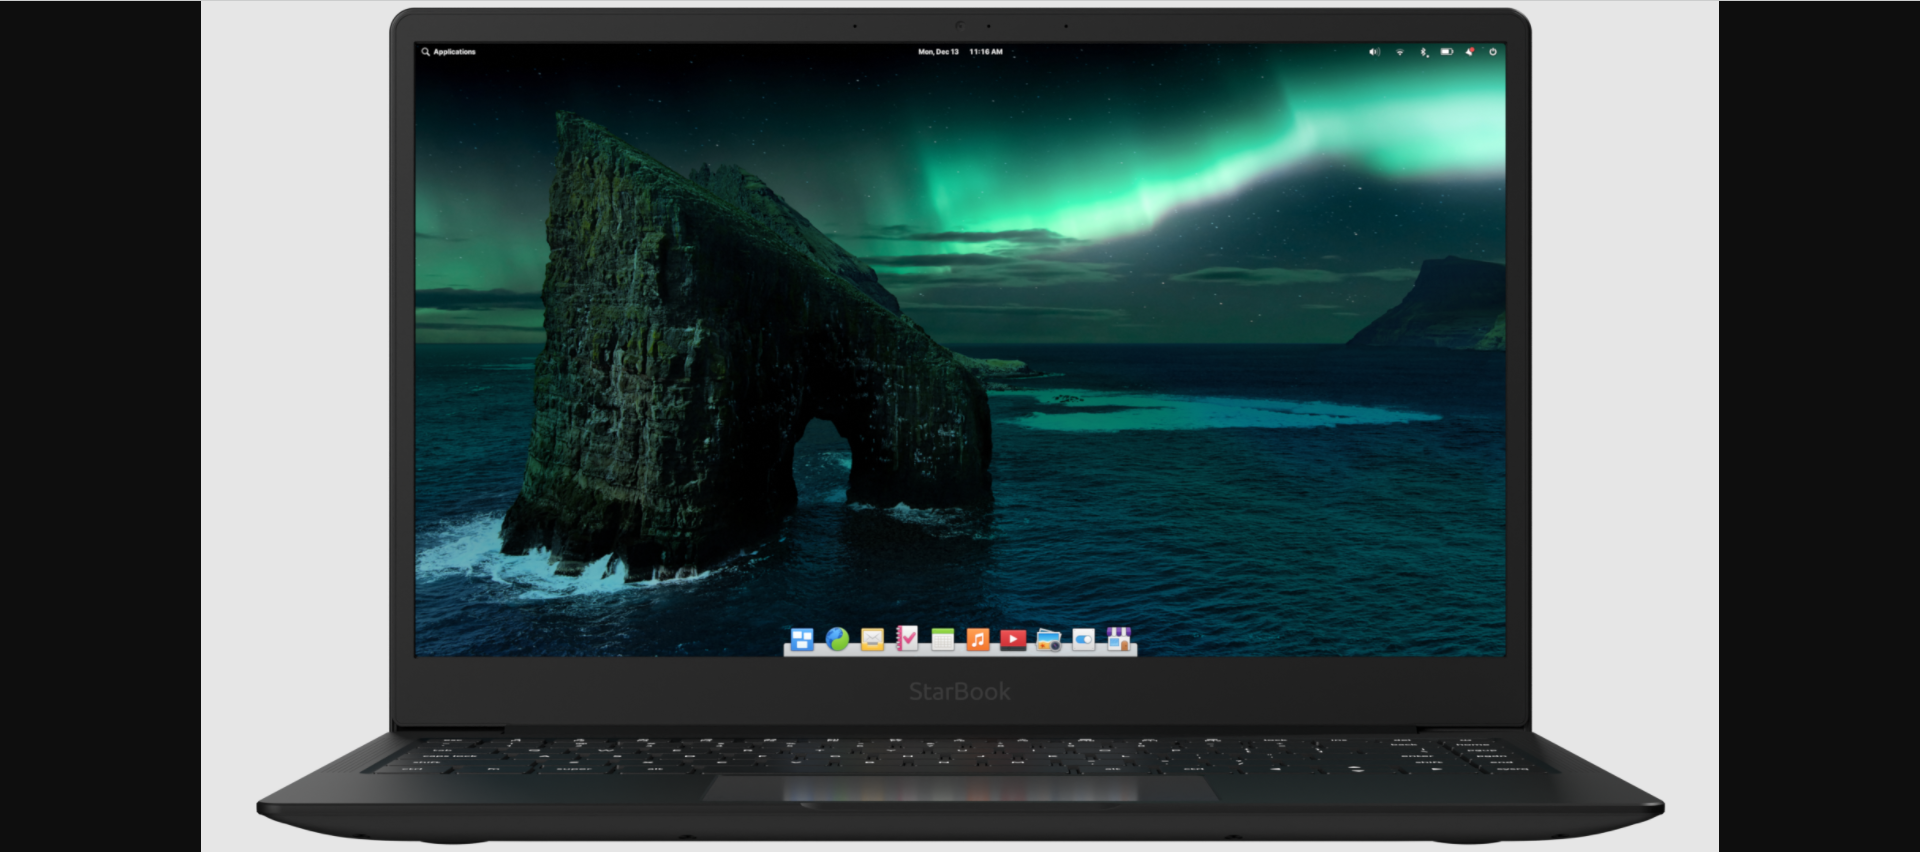 Distribuição Linux elementary OS 6.1 “Jólnir” acaba de ser lançada